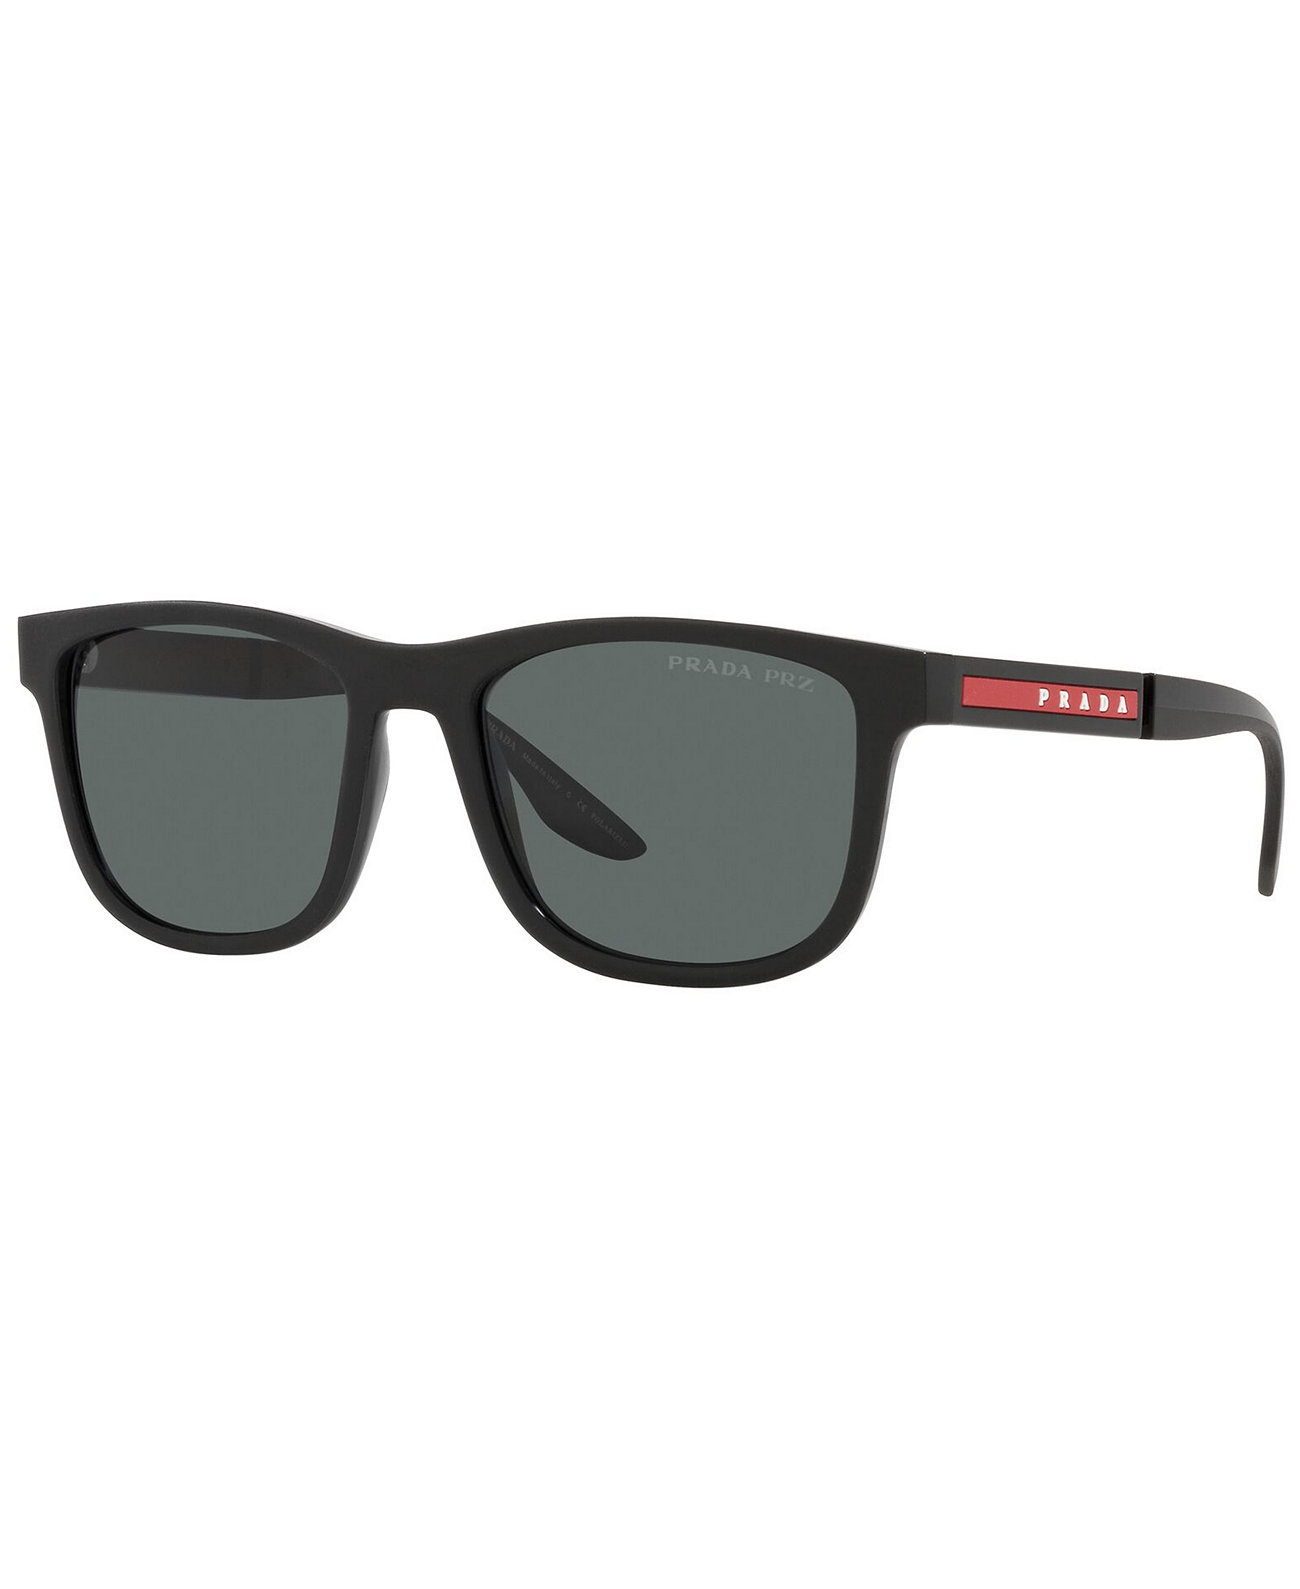 Мужские поляризованные солнцезащитные очки, PS 04XS 54 Prada Linea Rossa